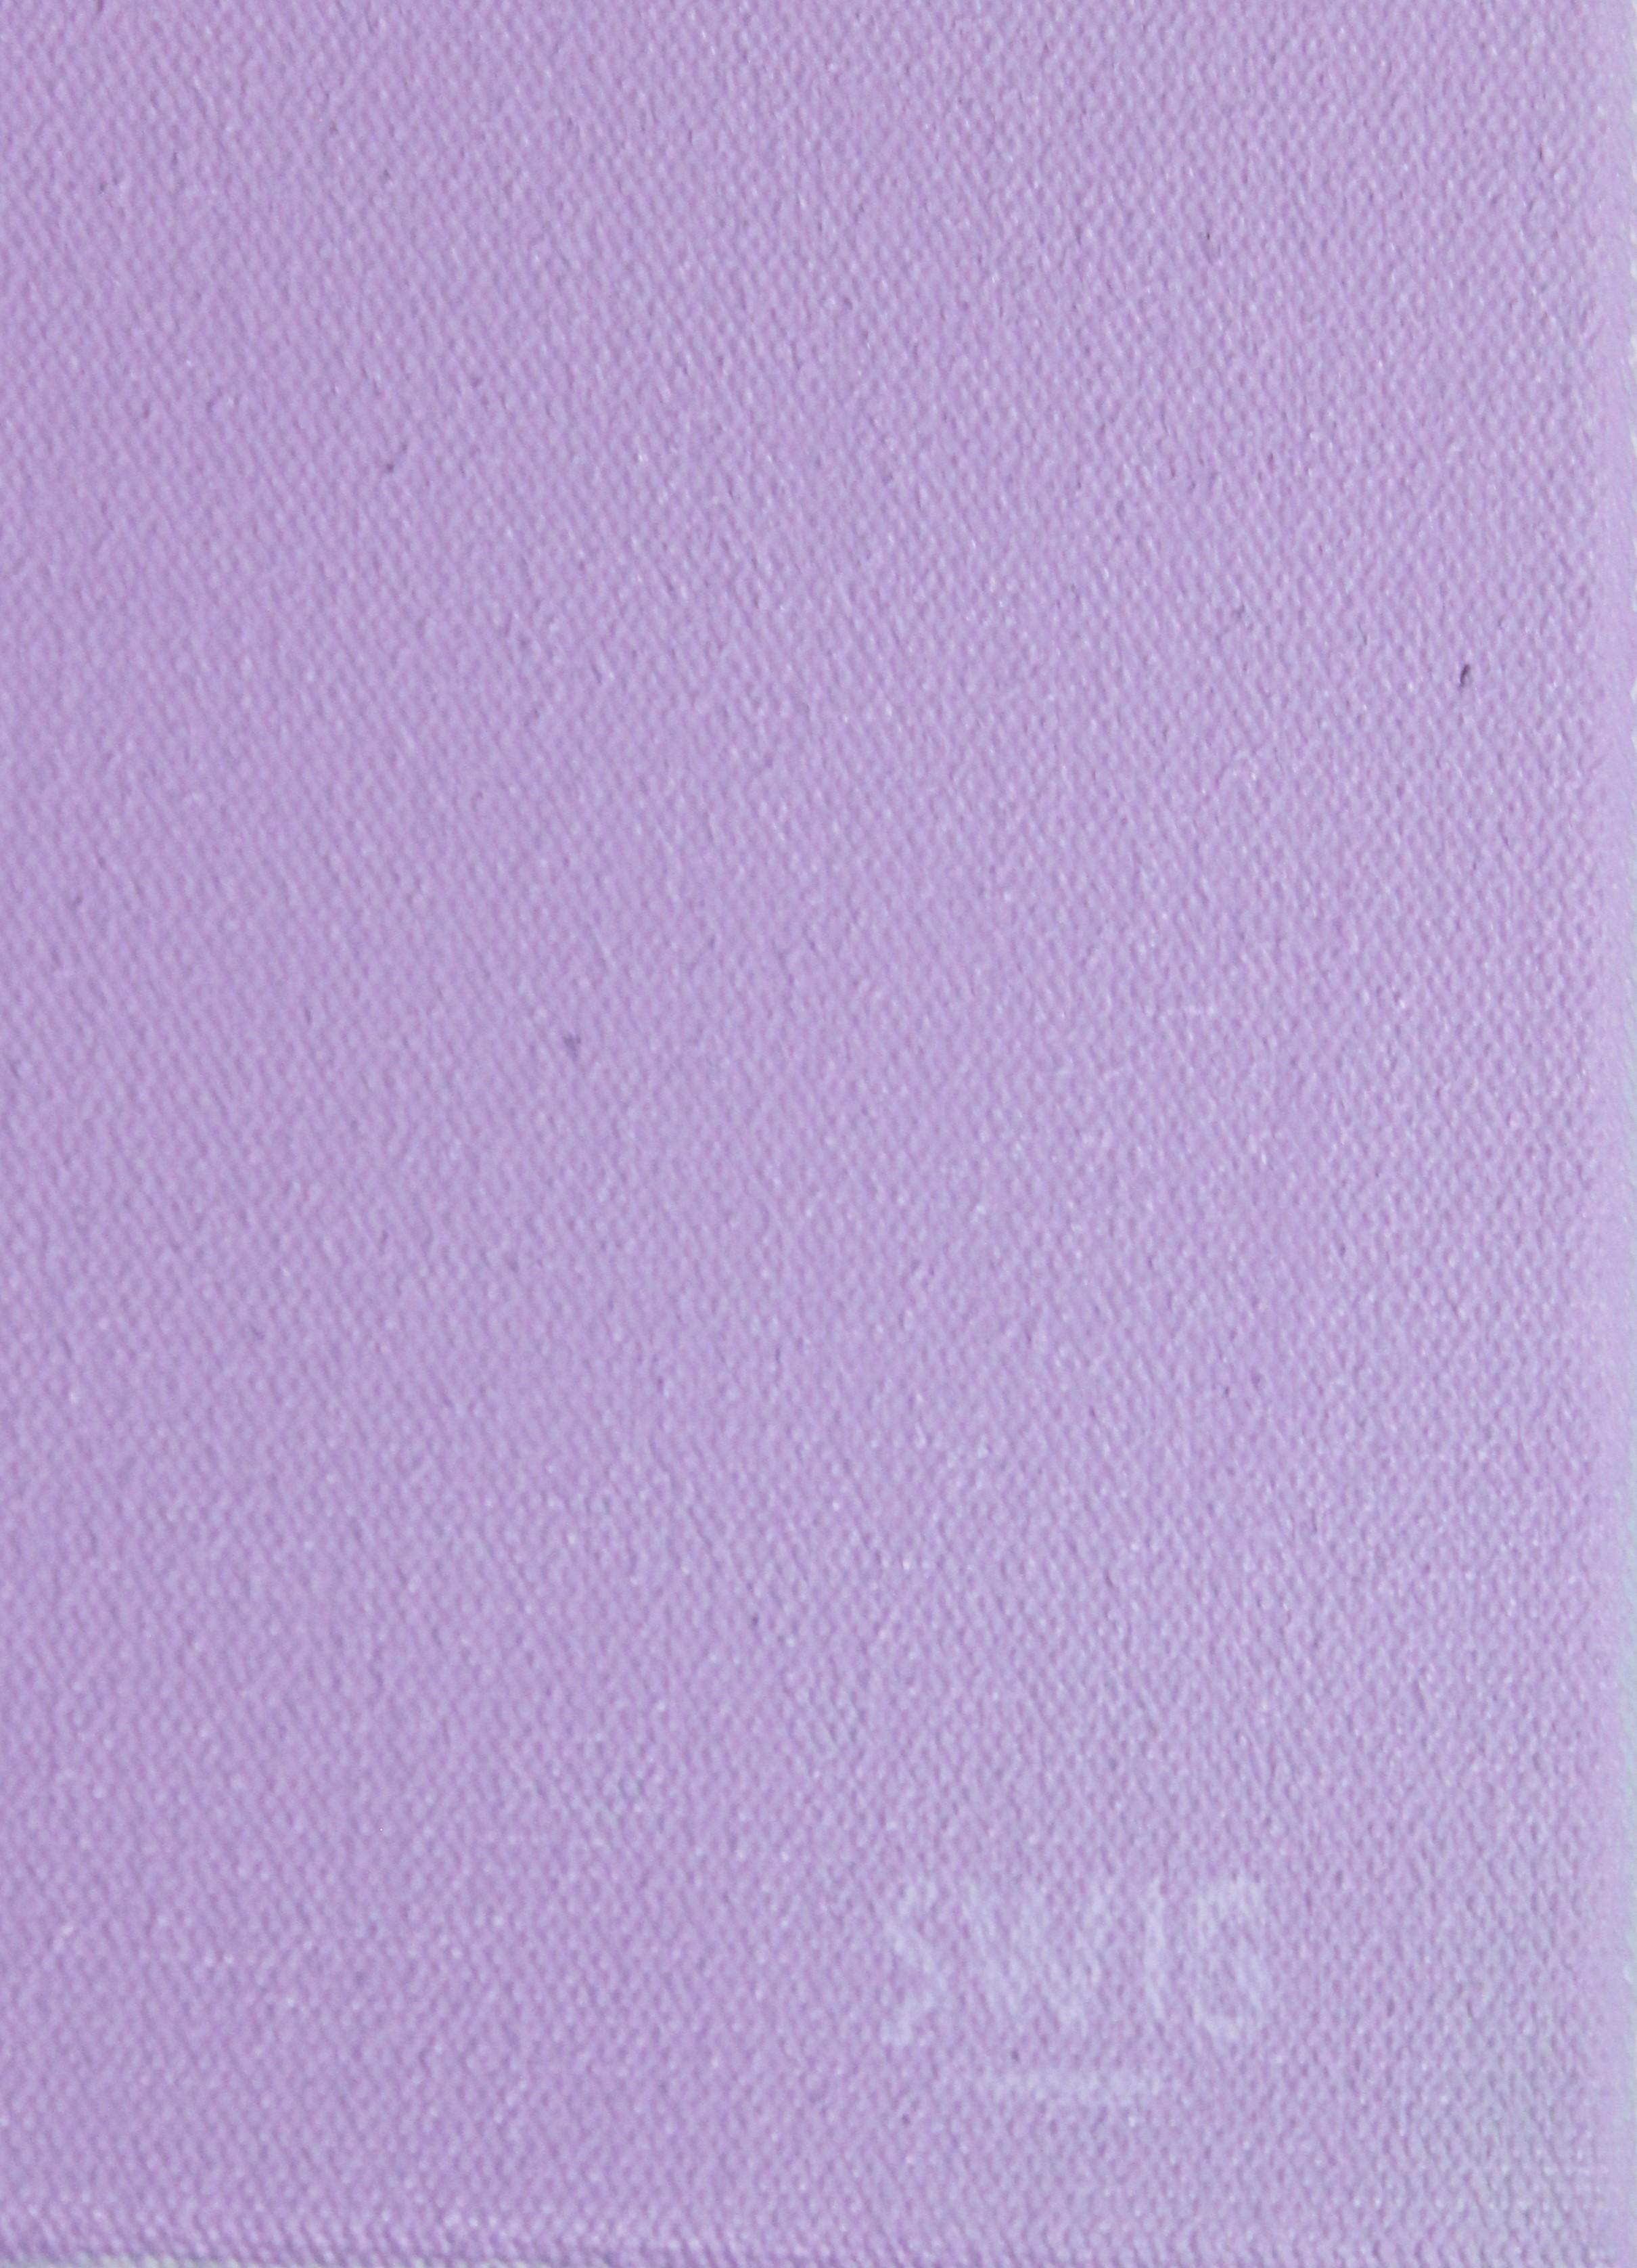 Structure violette dans un ciel gris avec un seul nuage blanc. L'artiste a signé l'œuvre dans le coin inférieur droit, et l'a titrée et datée au dos. La toile n'est pas encadrée. 

Biographie de l'artiste : 
Scott Woodard est un artiste local de